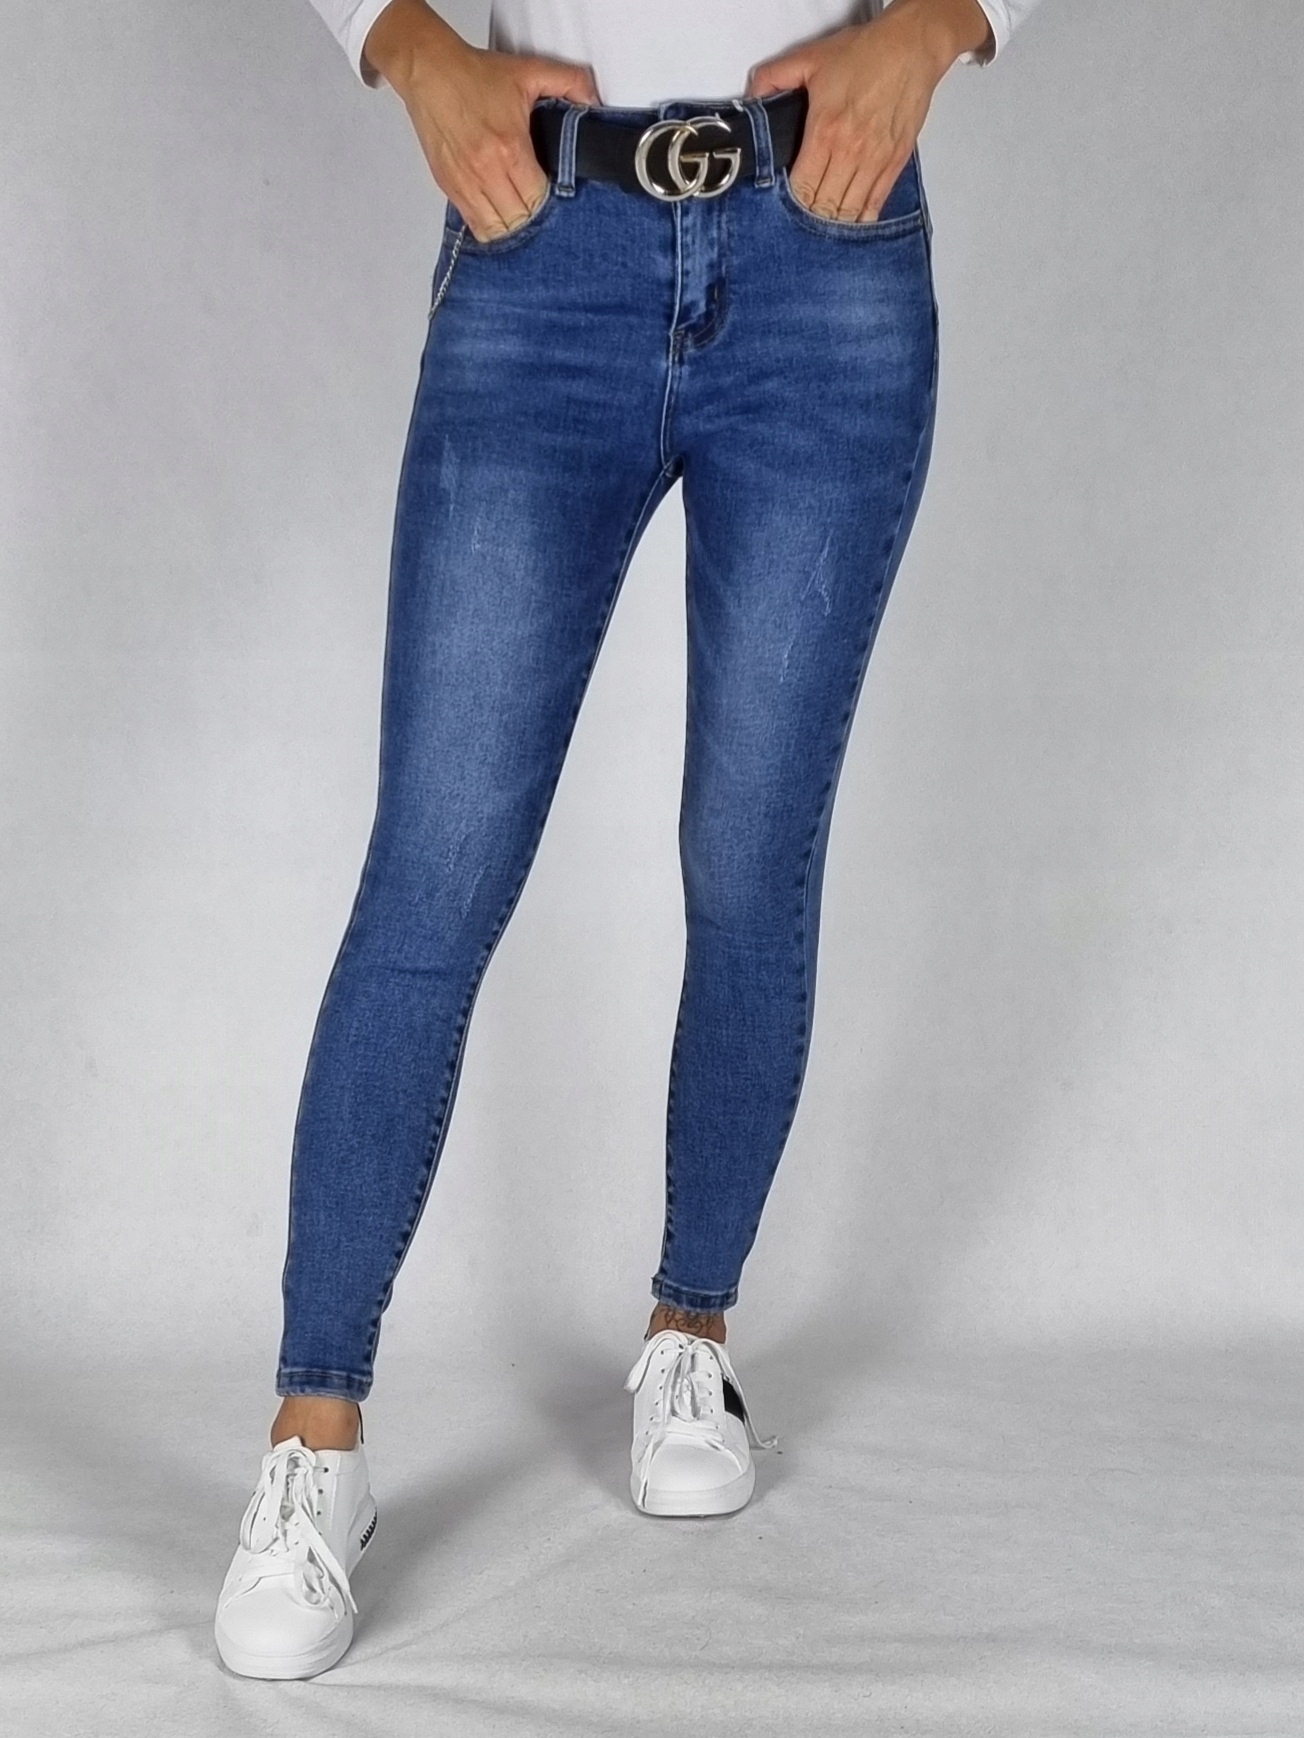 M. SARA джинсовые брюки с потертостями размер 27 размер 27